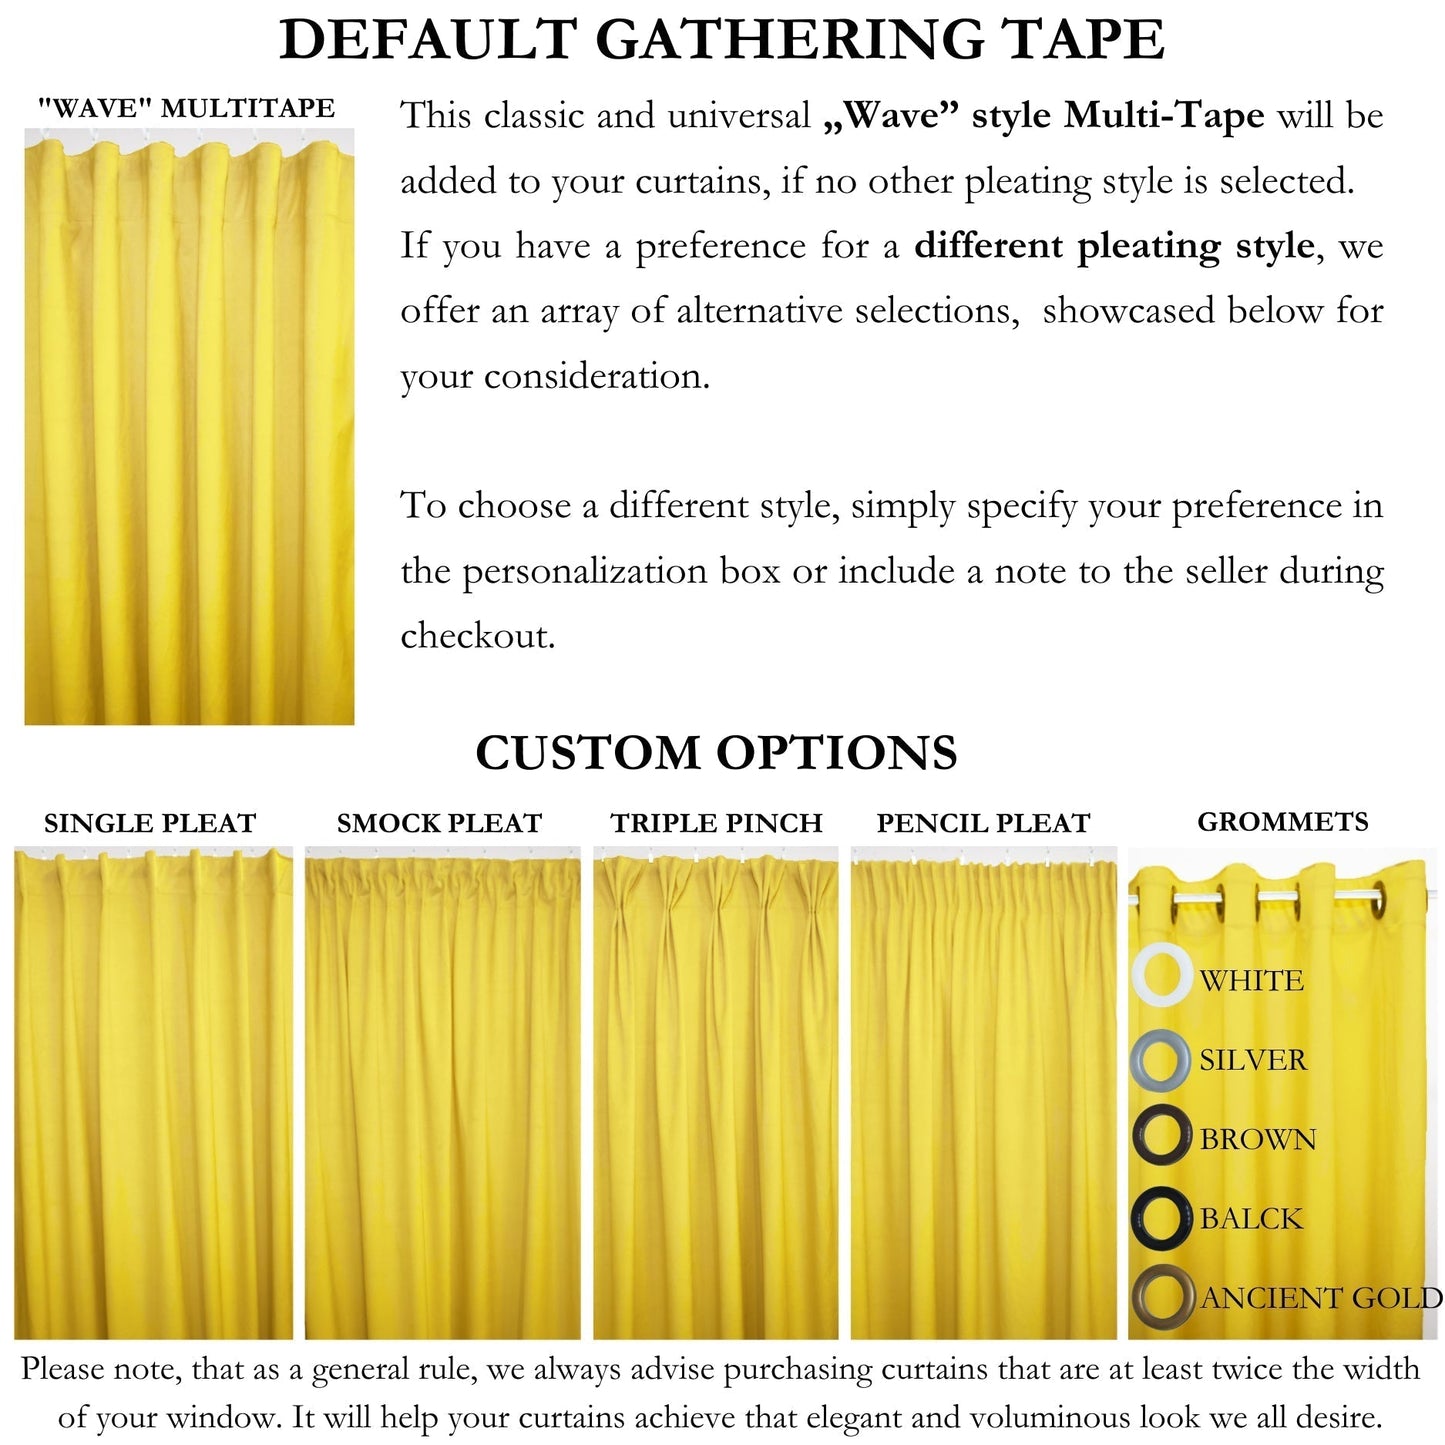 Velvet Curtains - Custom Order No. 467